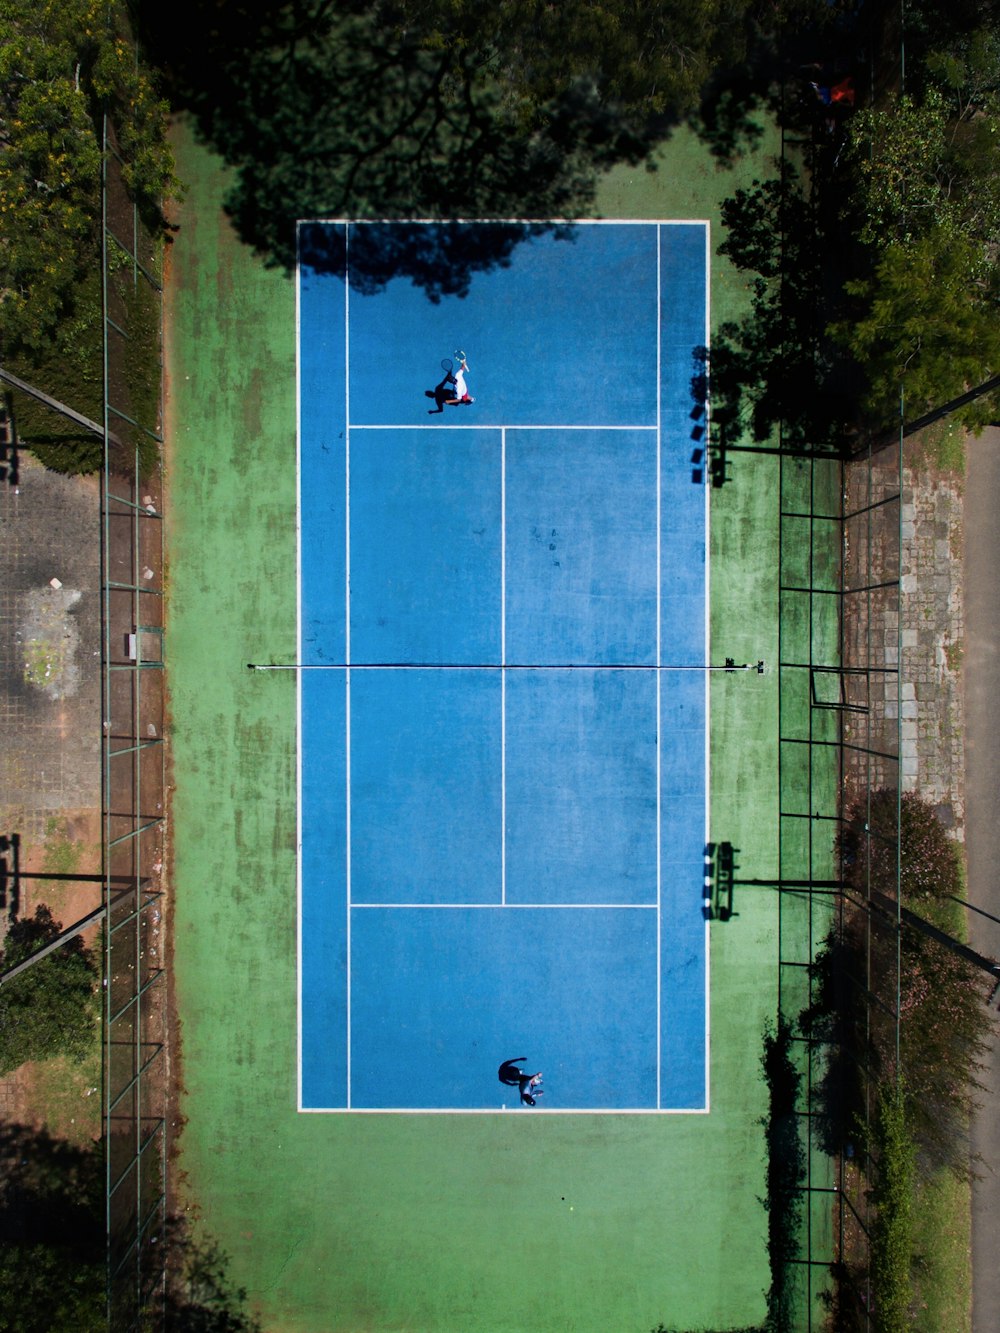 テニスをする2人の男性